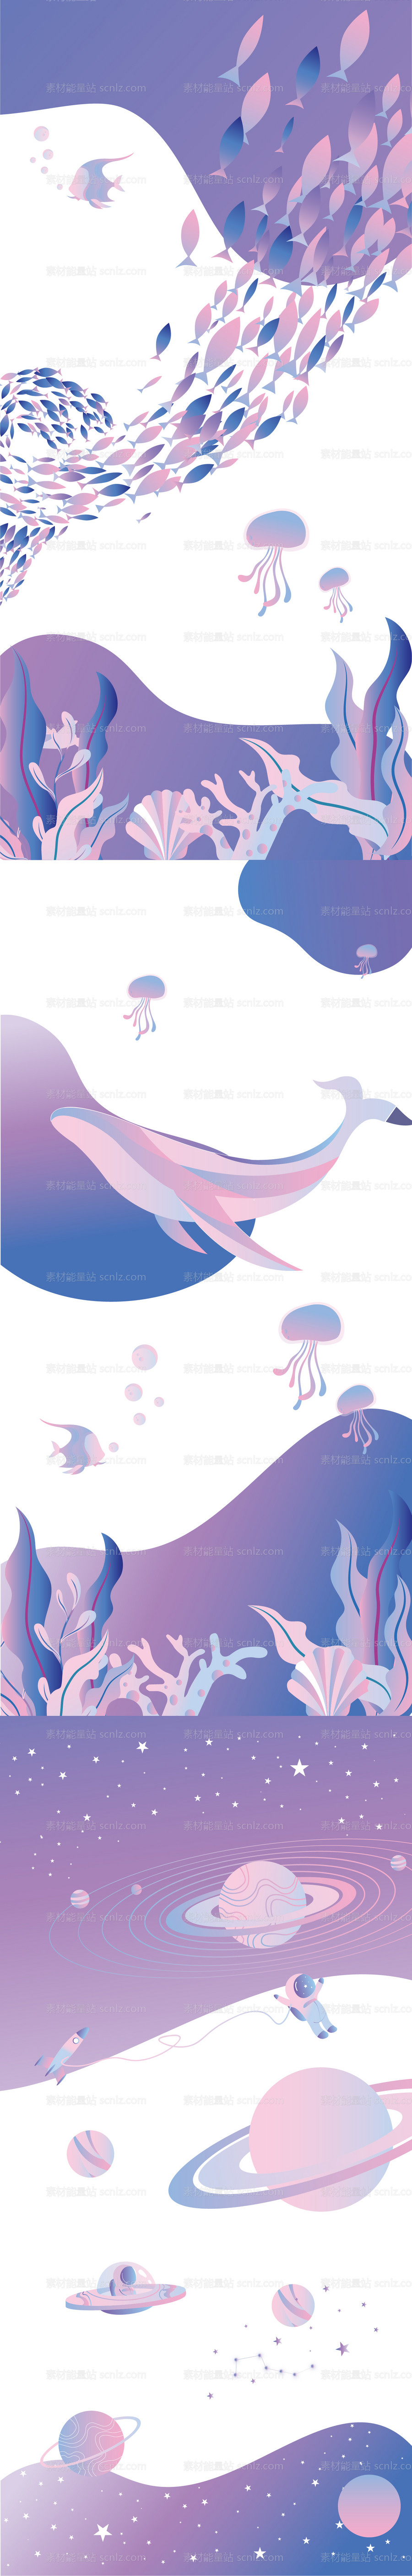 素材能量站-紫色系梦幻海洋银河商业手绘玻璃贴